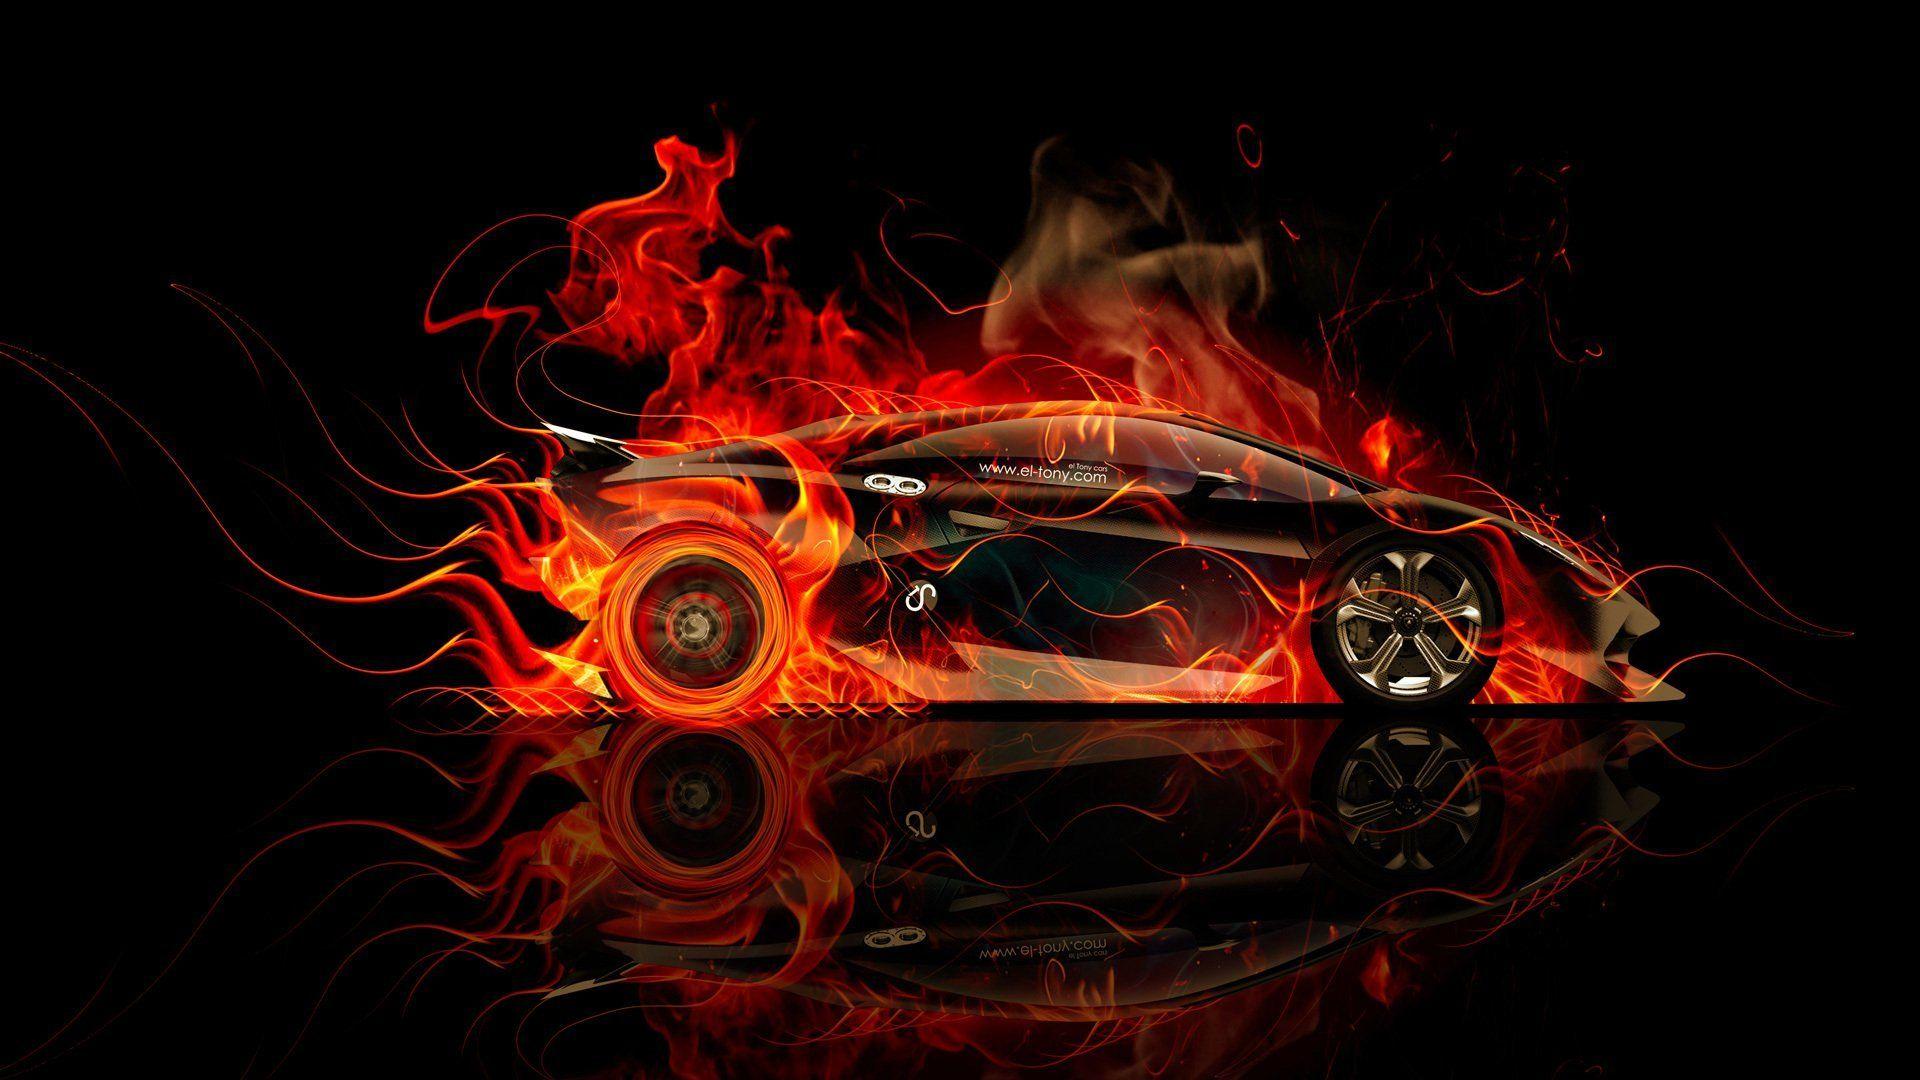 Lamborghini On Fire Wallpaper Free Lamborghini On